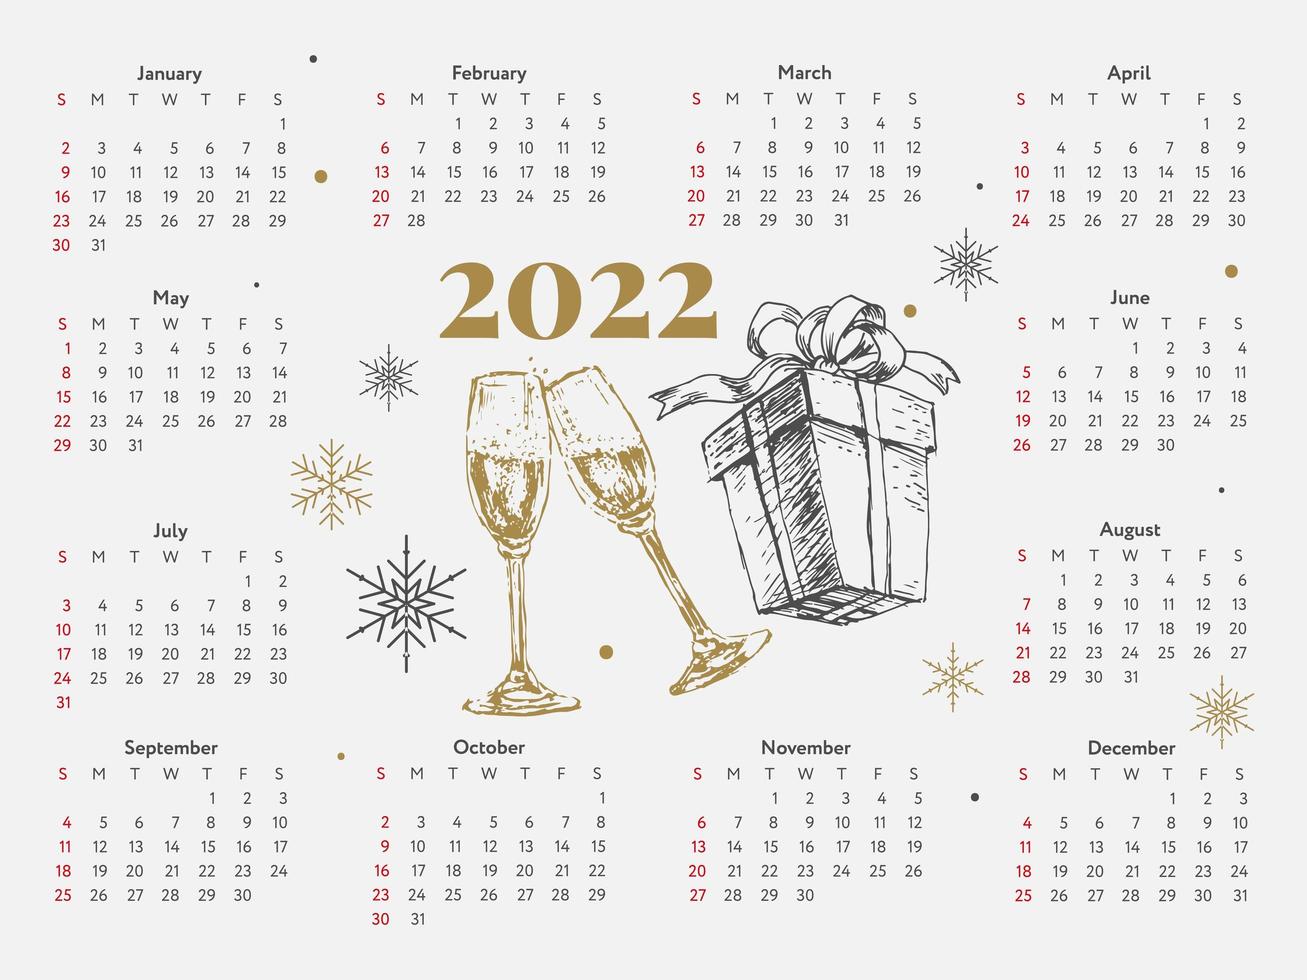 2022 Weihnachtsbaum Neujahrsskizze Kalenderwoche beginnt am Sonntag. vektor